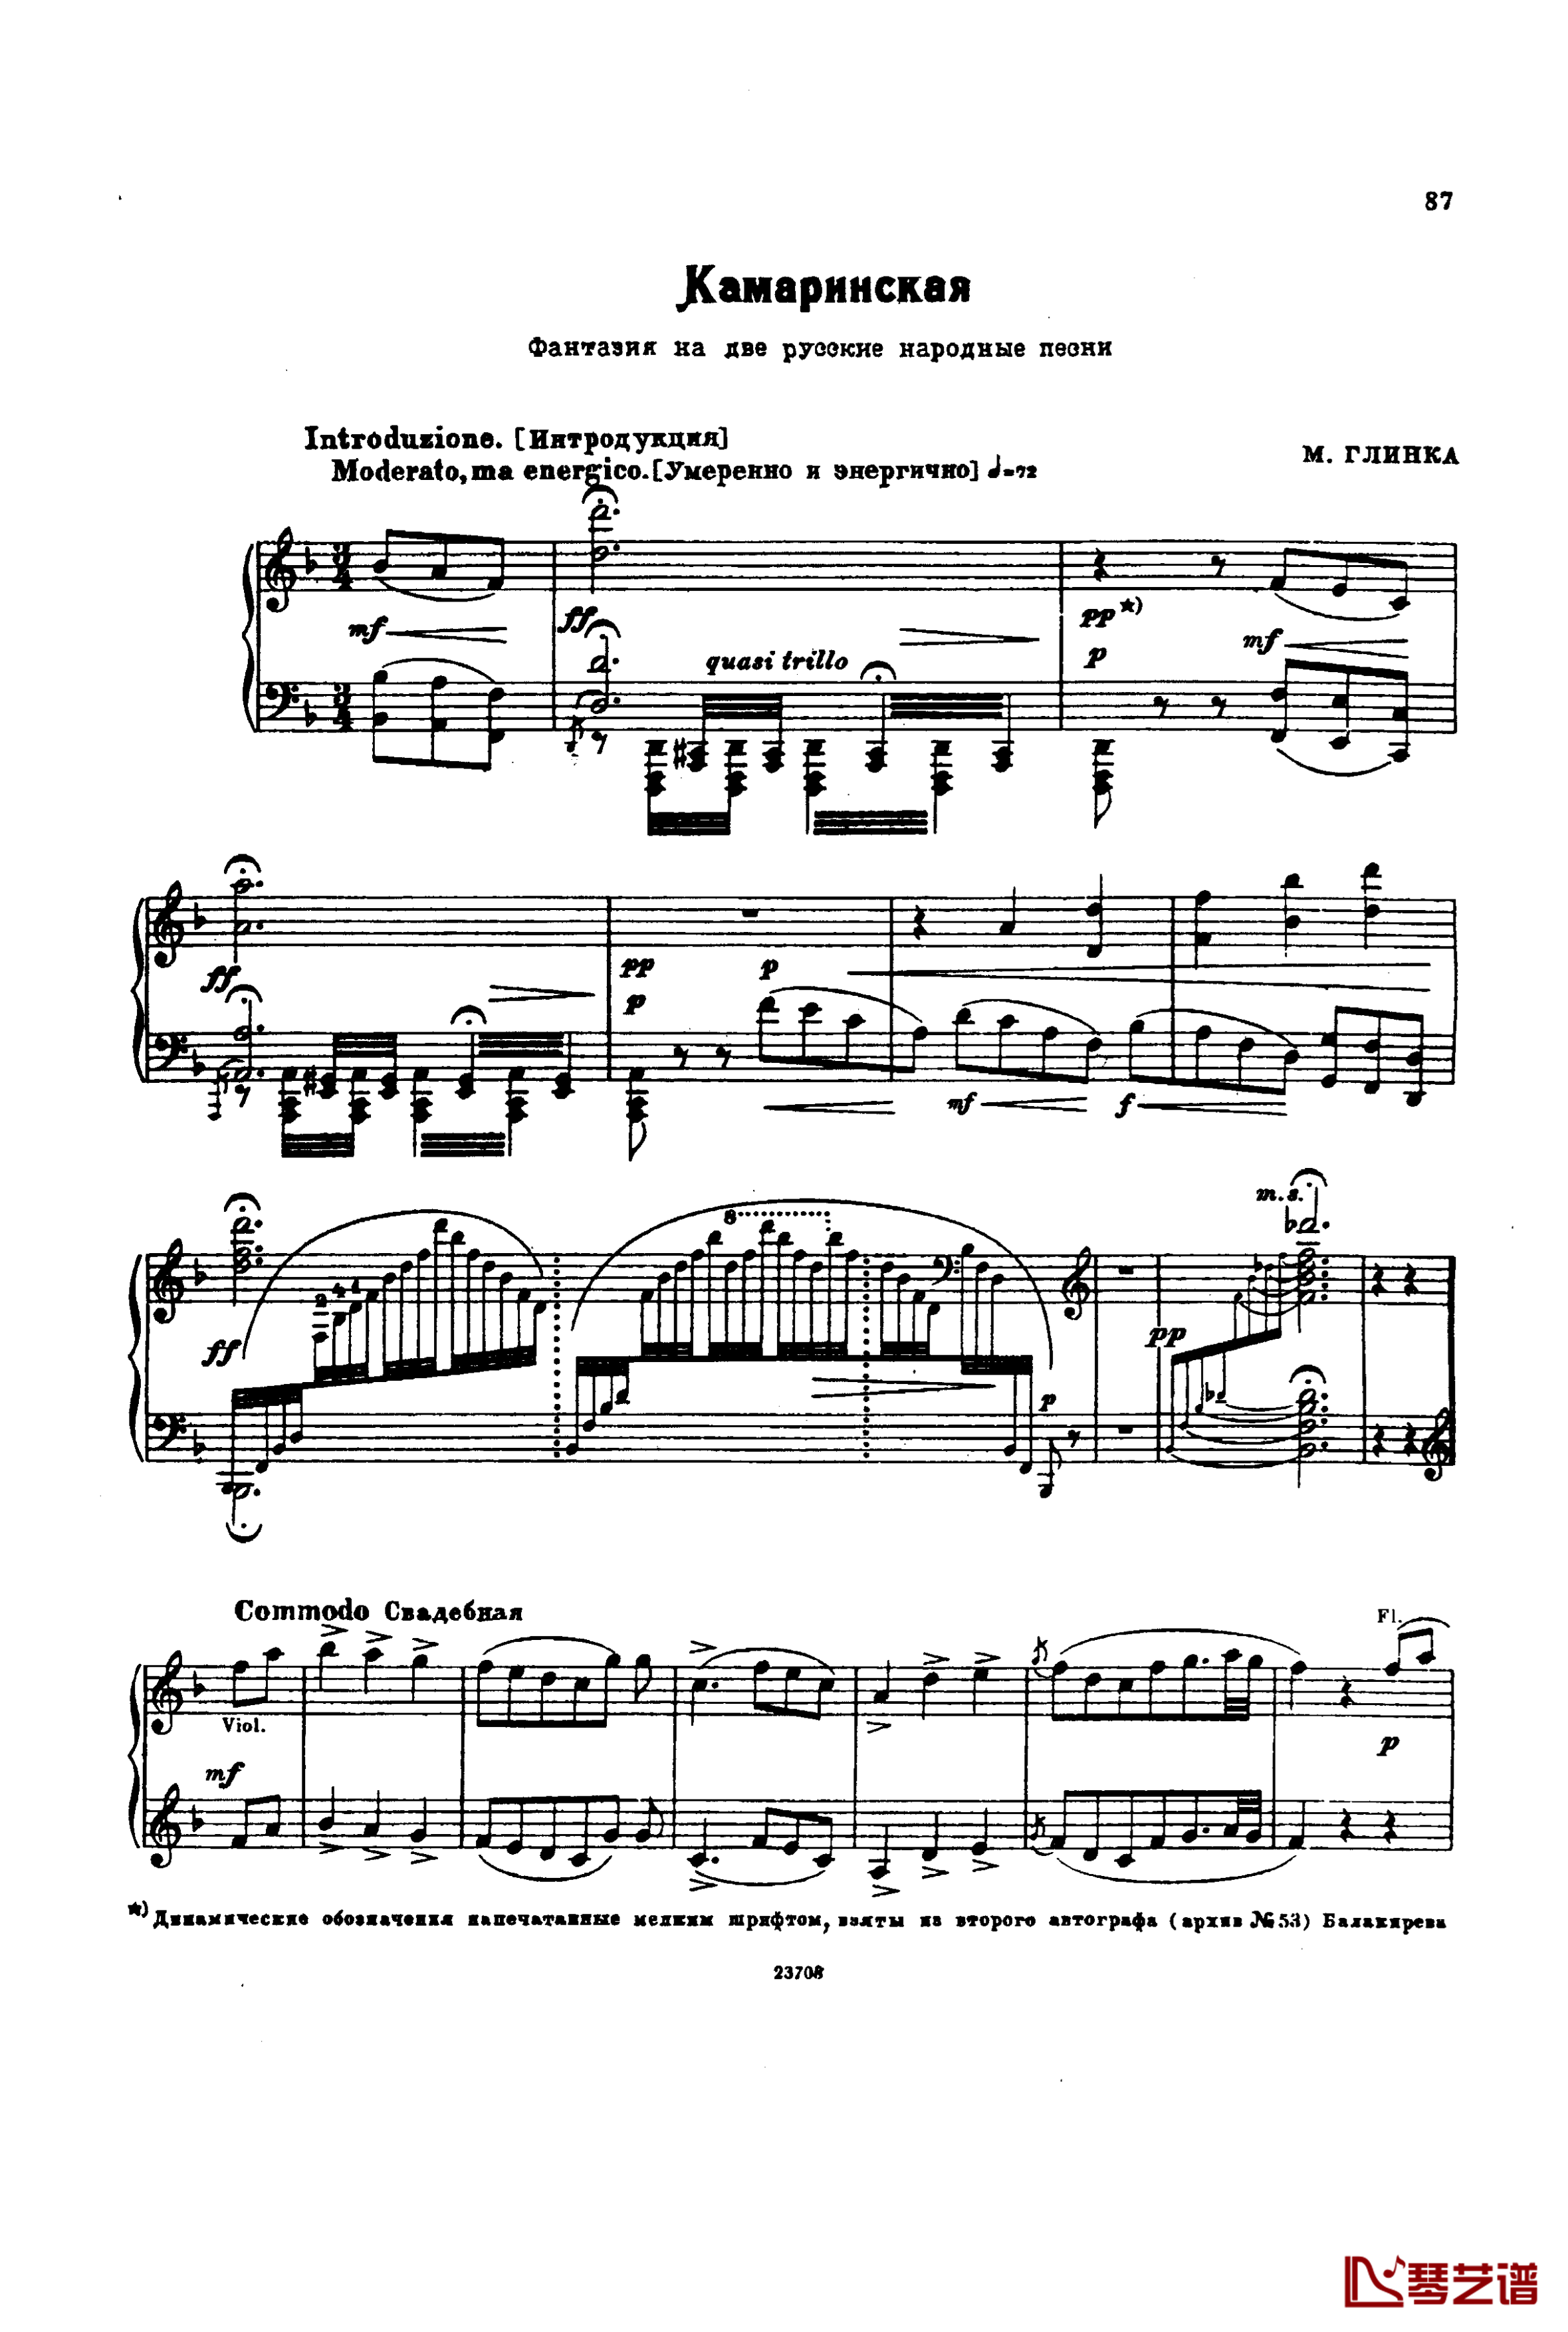 卡玛林斯卡亚幻想曲钢琴谱-格林卡1